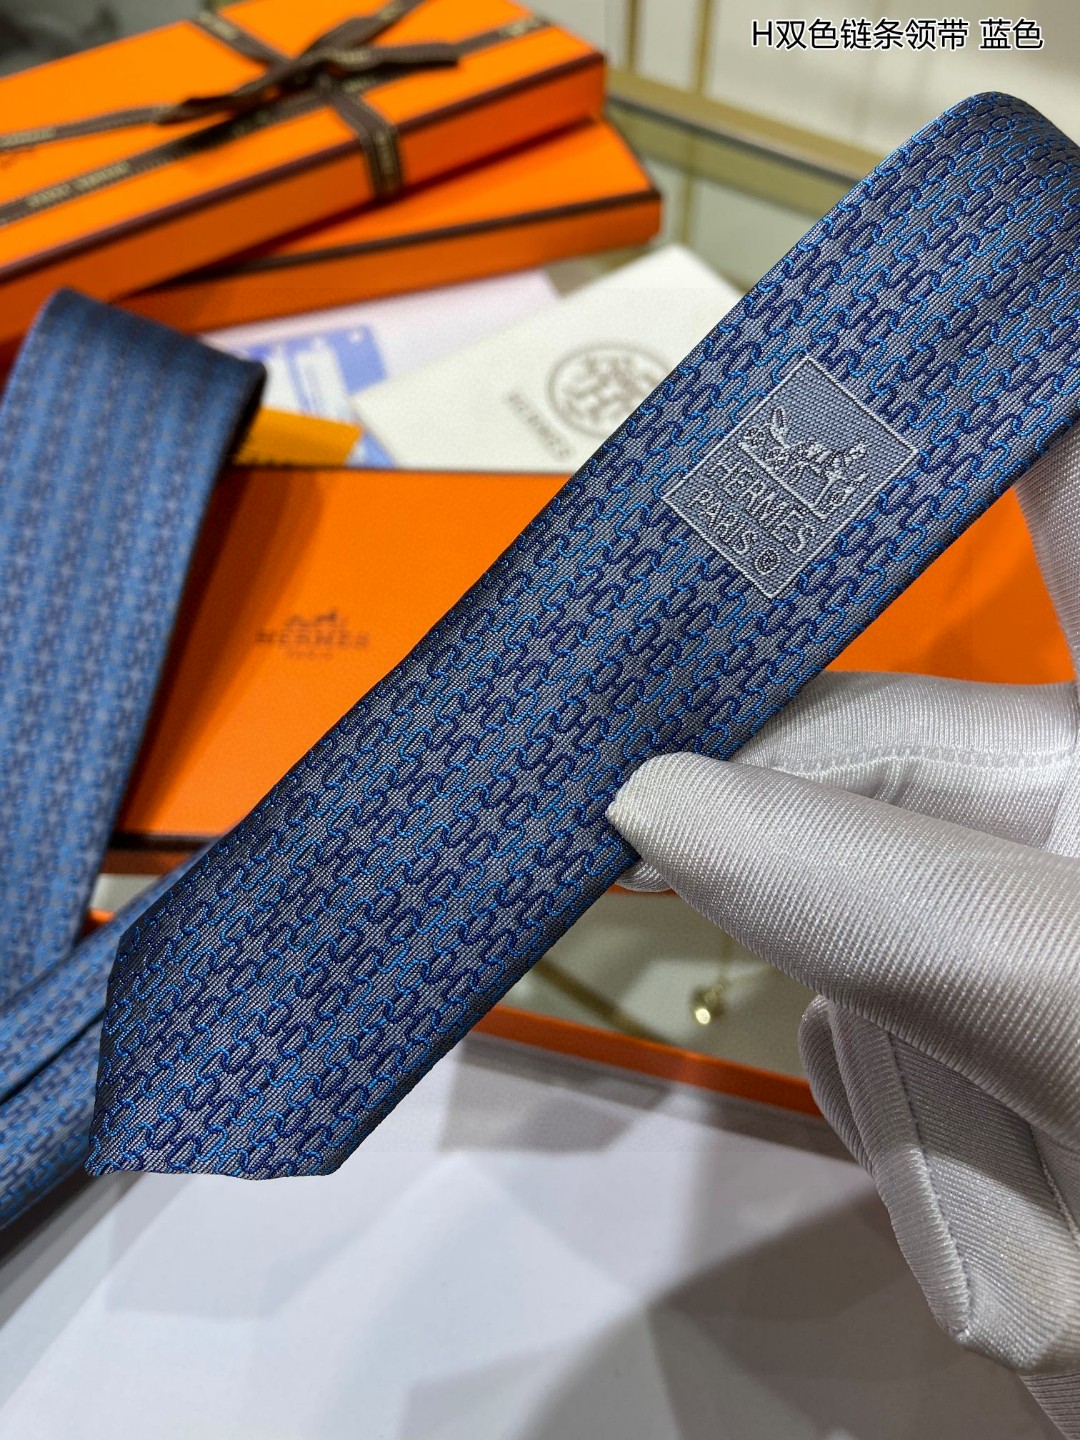 特价男士新款领带系列H双色链条领带稀有H家每年都有一千条不同印花的领带面世从最初的多以几何图案表现骑术活